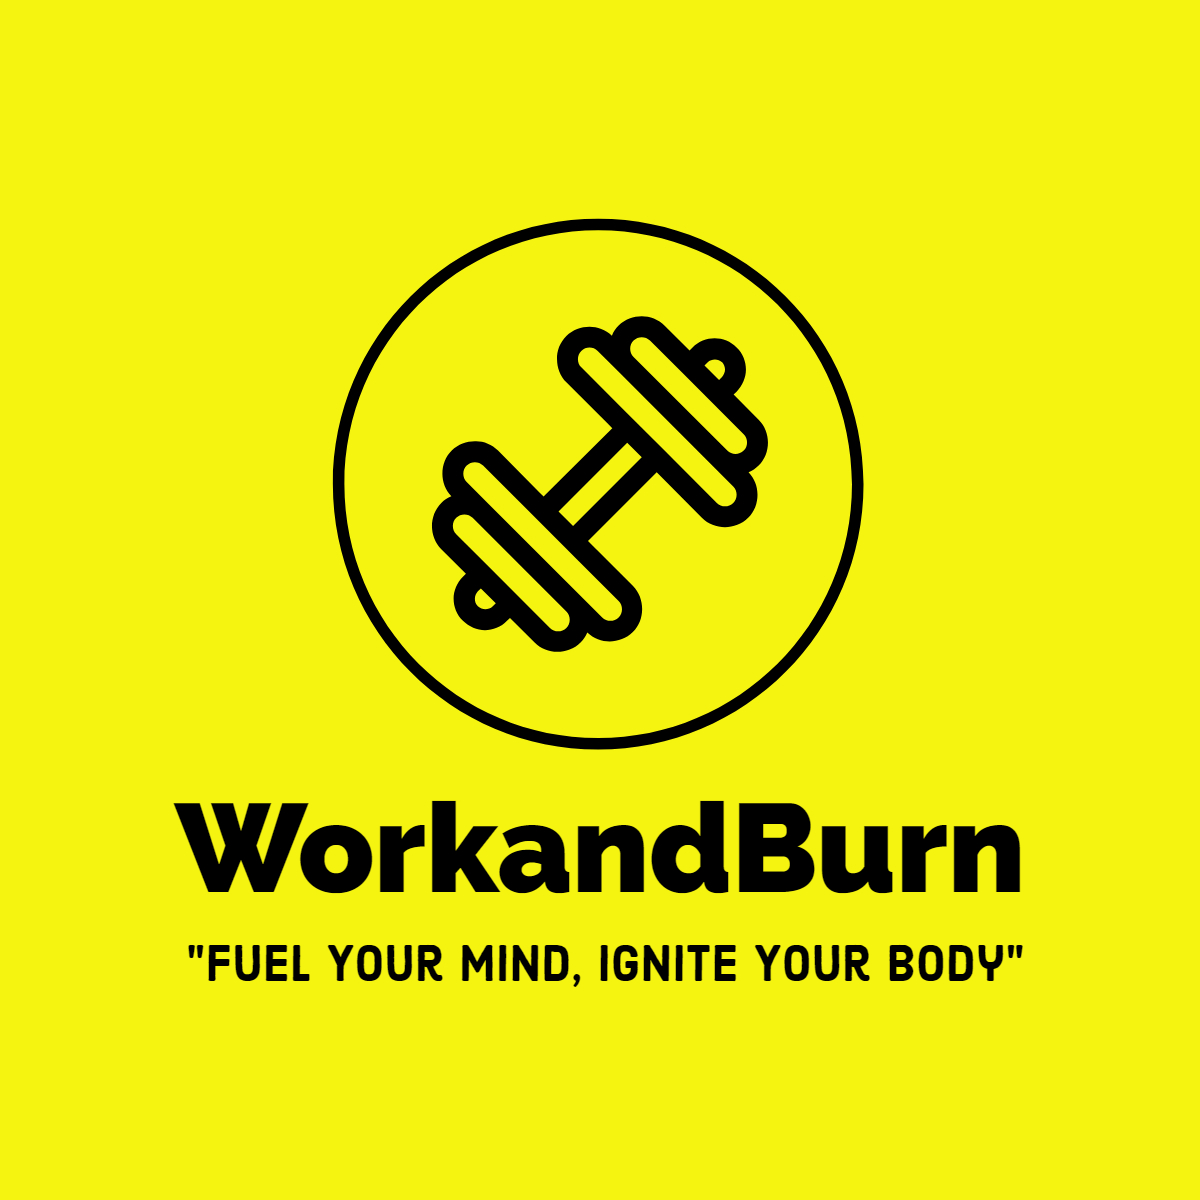 Work and Burn